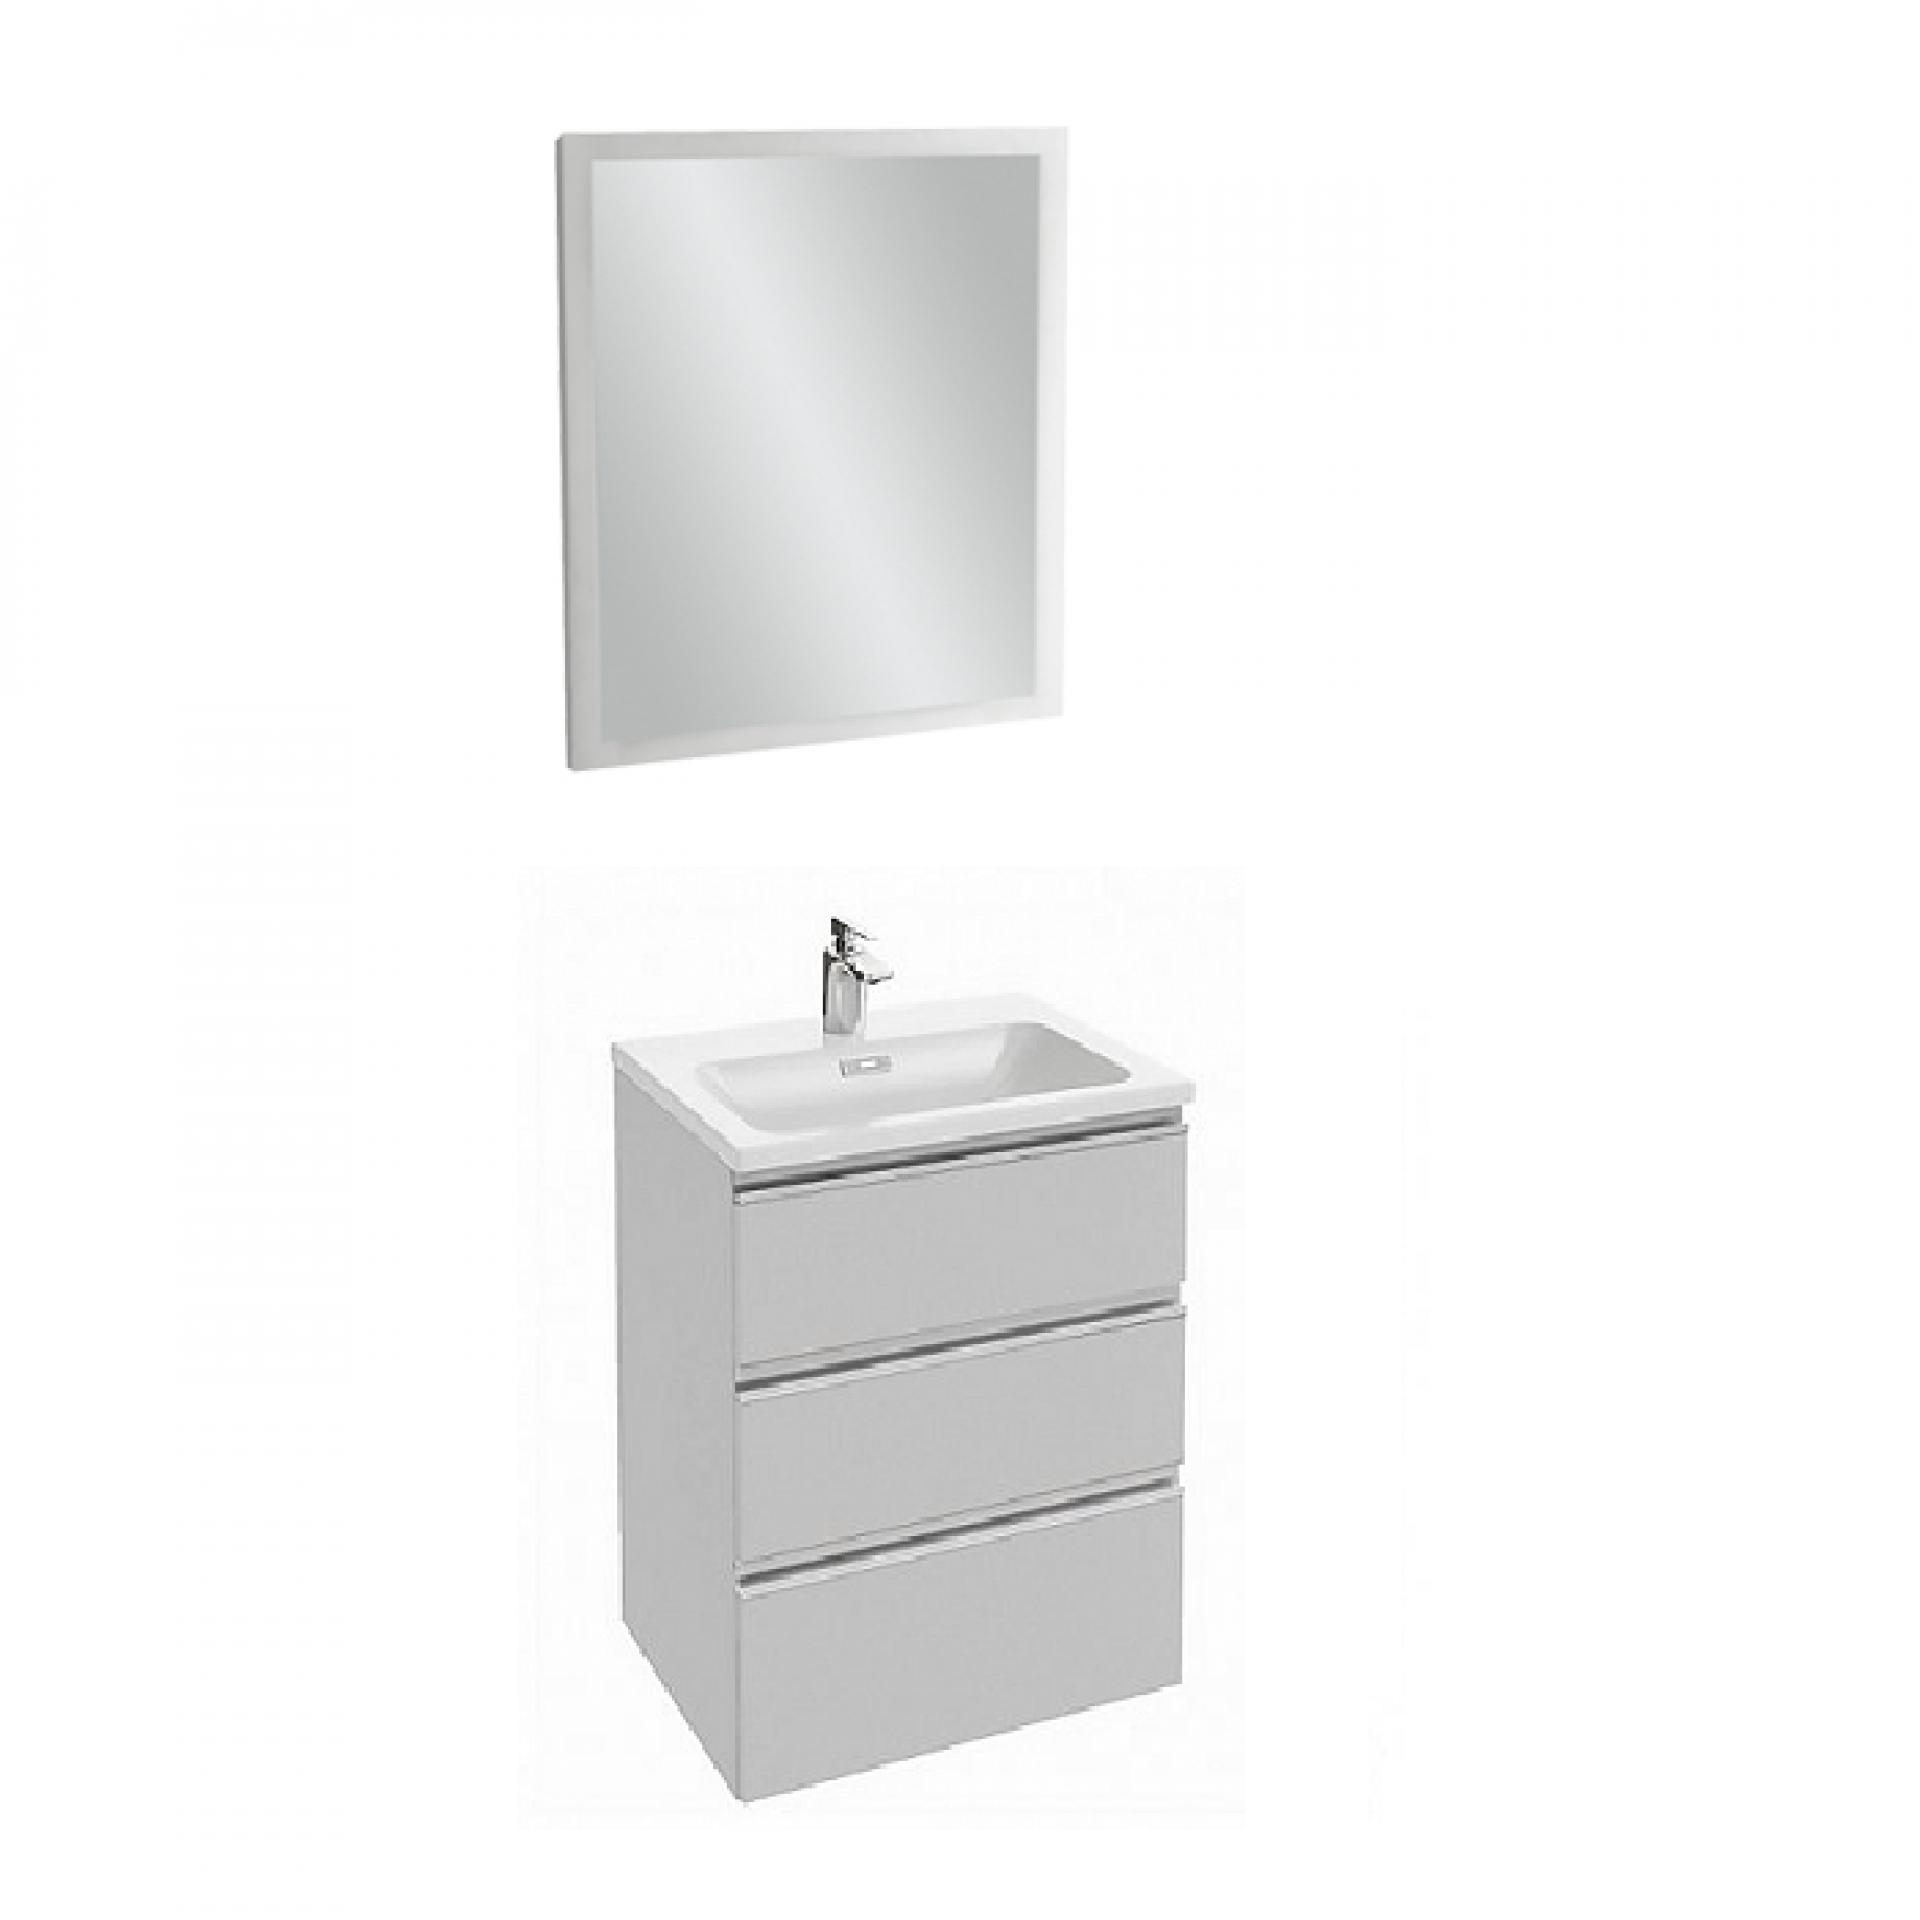 Комплект мебели 60 см Jacob Delafon Vox с раковиной EXAF112-Z-00, тумбой EB2050-RA-N18, зеркалом EB1440-NF, белый блестящий